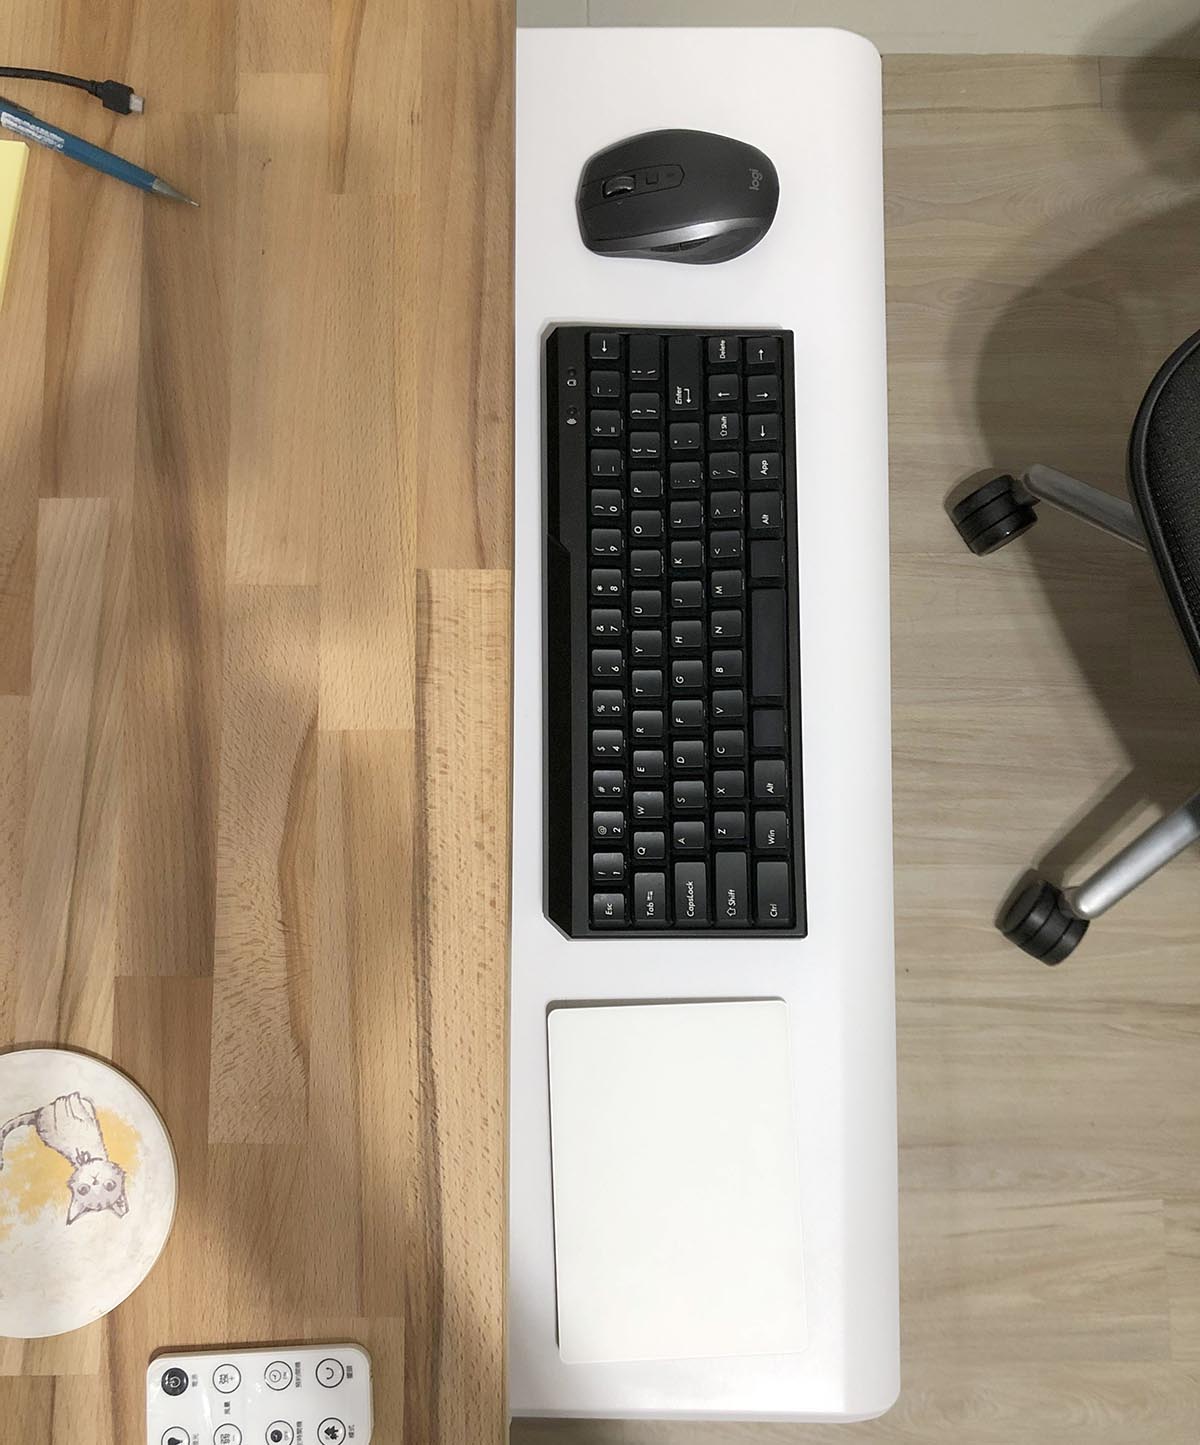 我的工作室 Mac 搭配鍵盤滑鼠配置